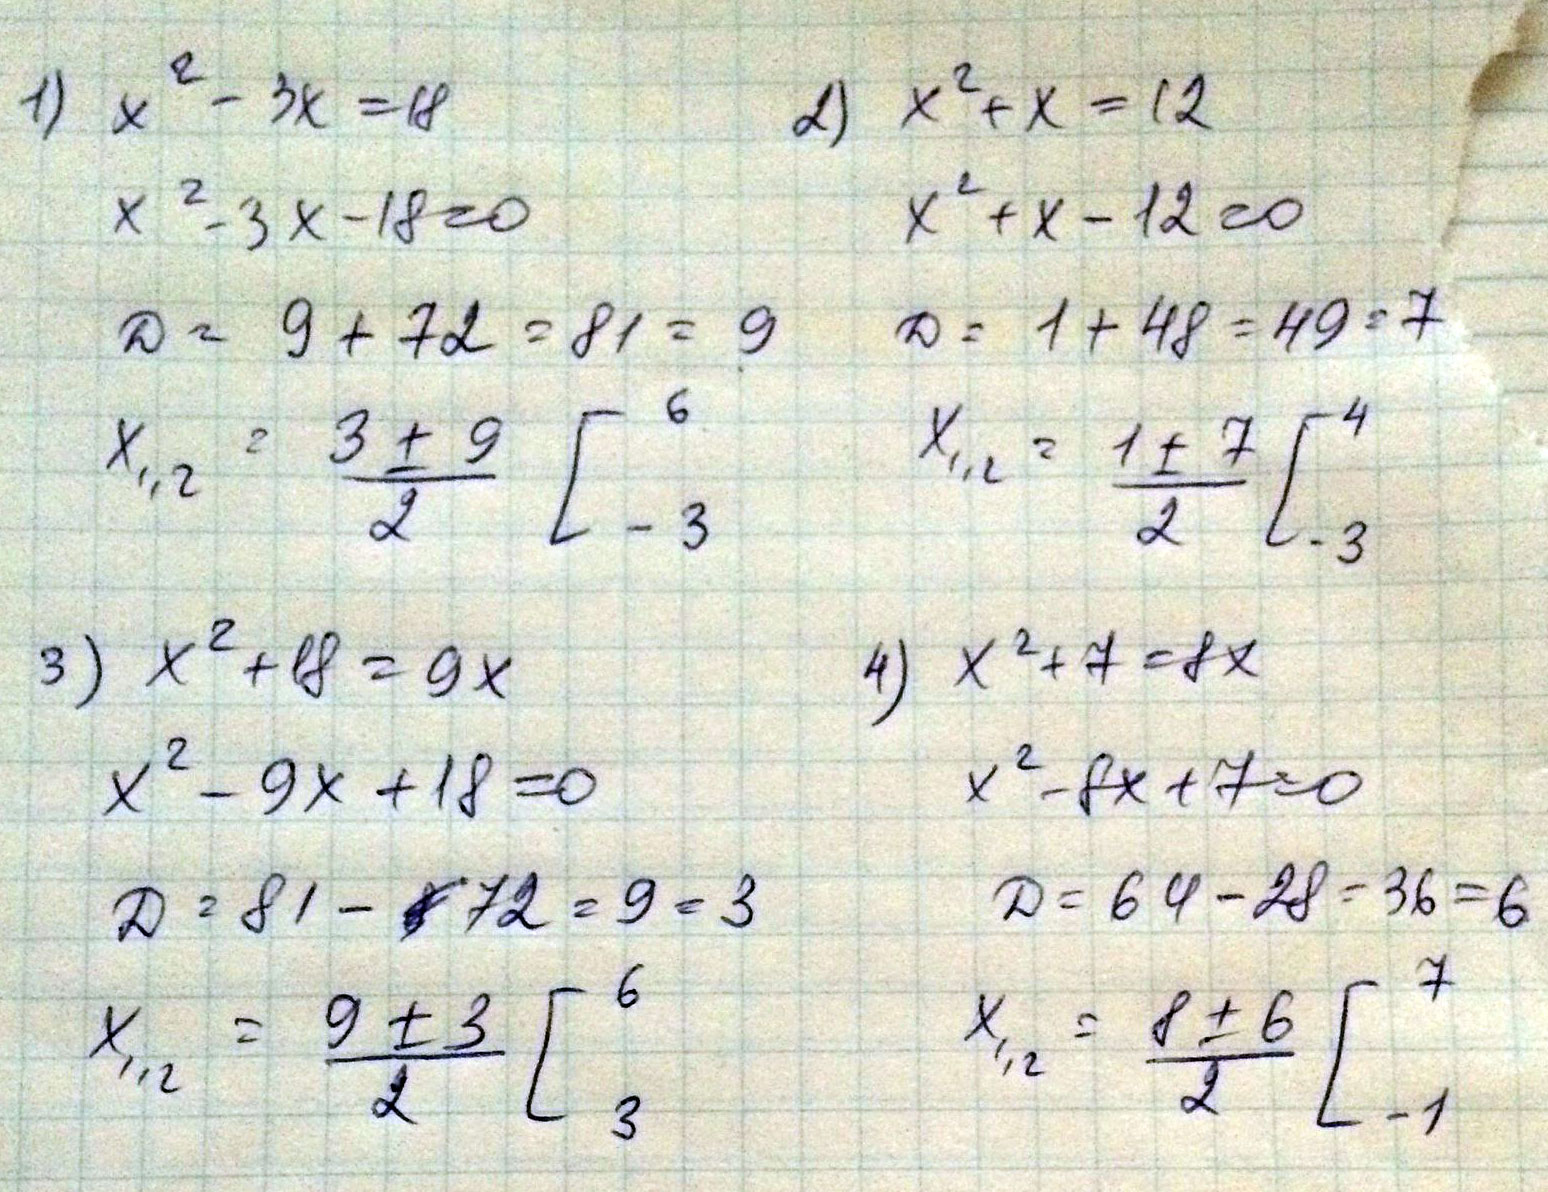  Выражение x - x- Квадратное уравнение решаем относительно x  Ищем дискриминант D - - - - - - - - - Дискриминант больше уравнение имеет корня x - - - - x - - - - - - - - - ....